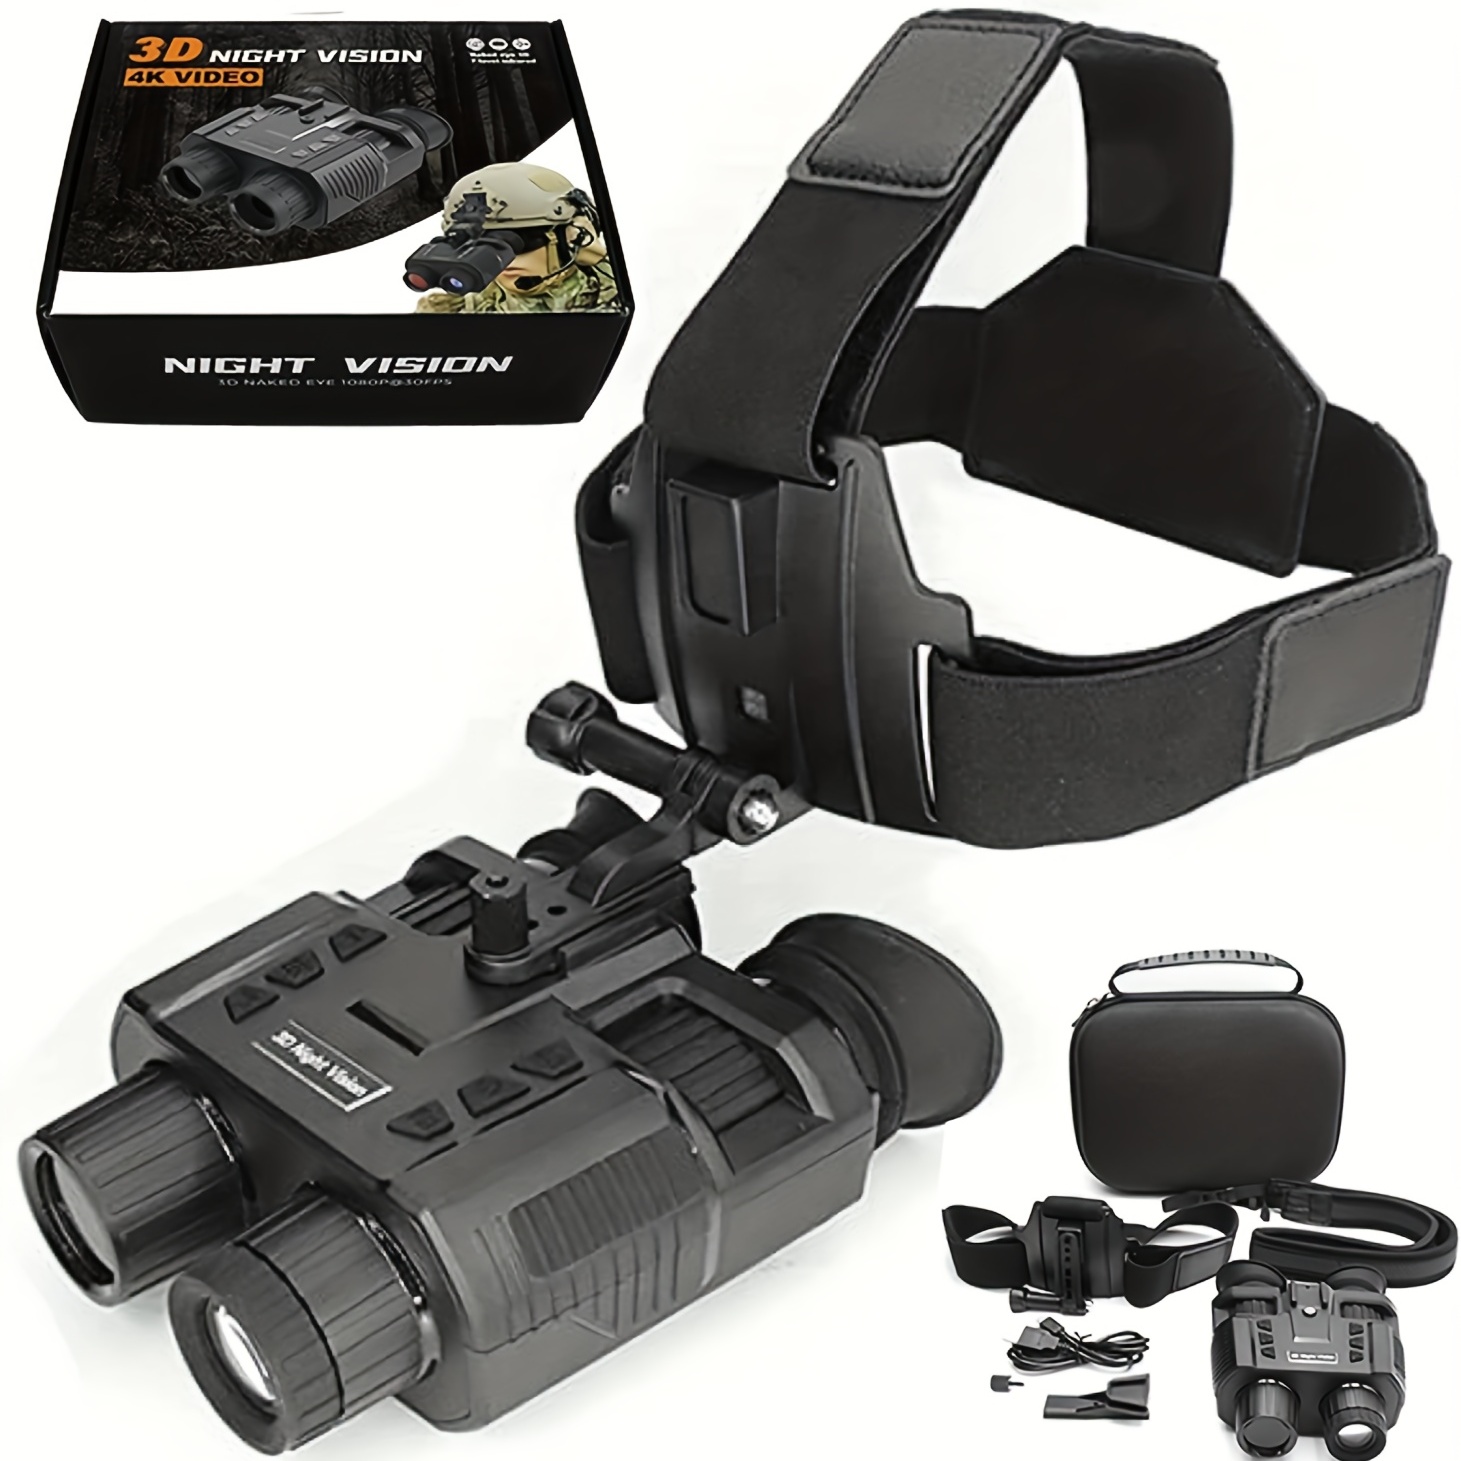 PVS-14 Dispositivo de visión nocturna binocular IR militar que permite su  uso como un dispositivo de mano o gafas de visión nocturna montadas en